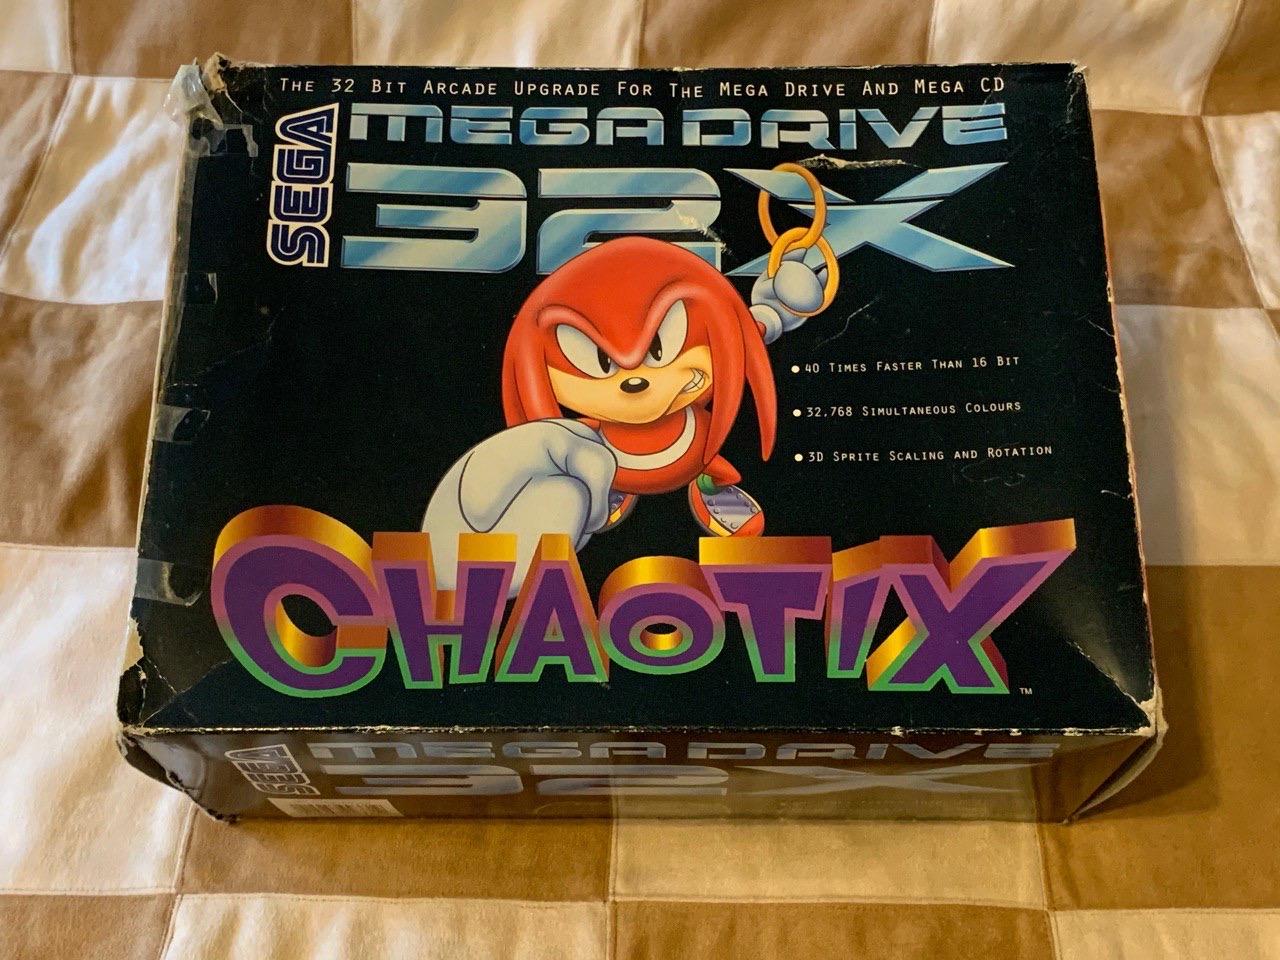 Knuckles' Chaotix - Full Soundtrack [SEGA Mega Drive 32X] (FLAC